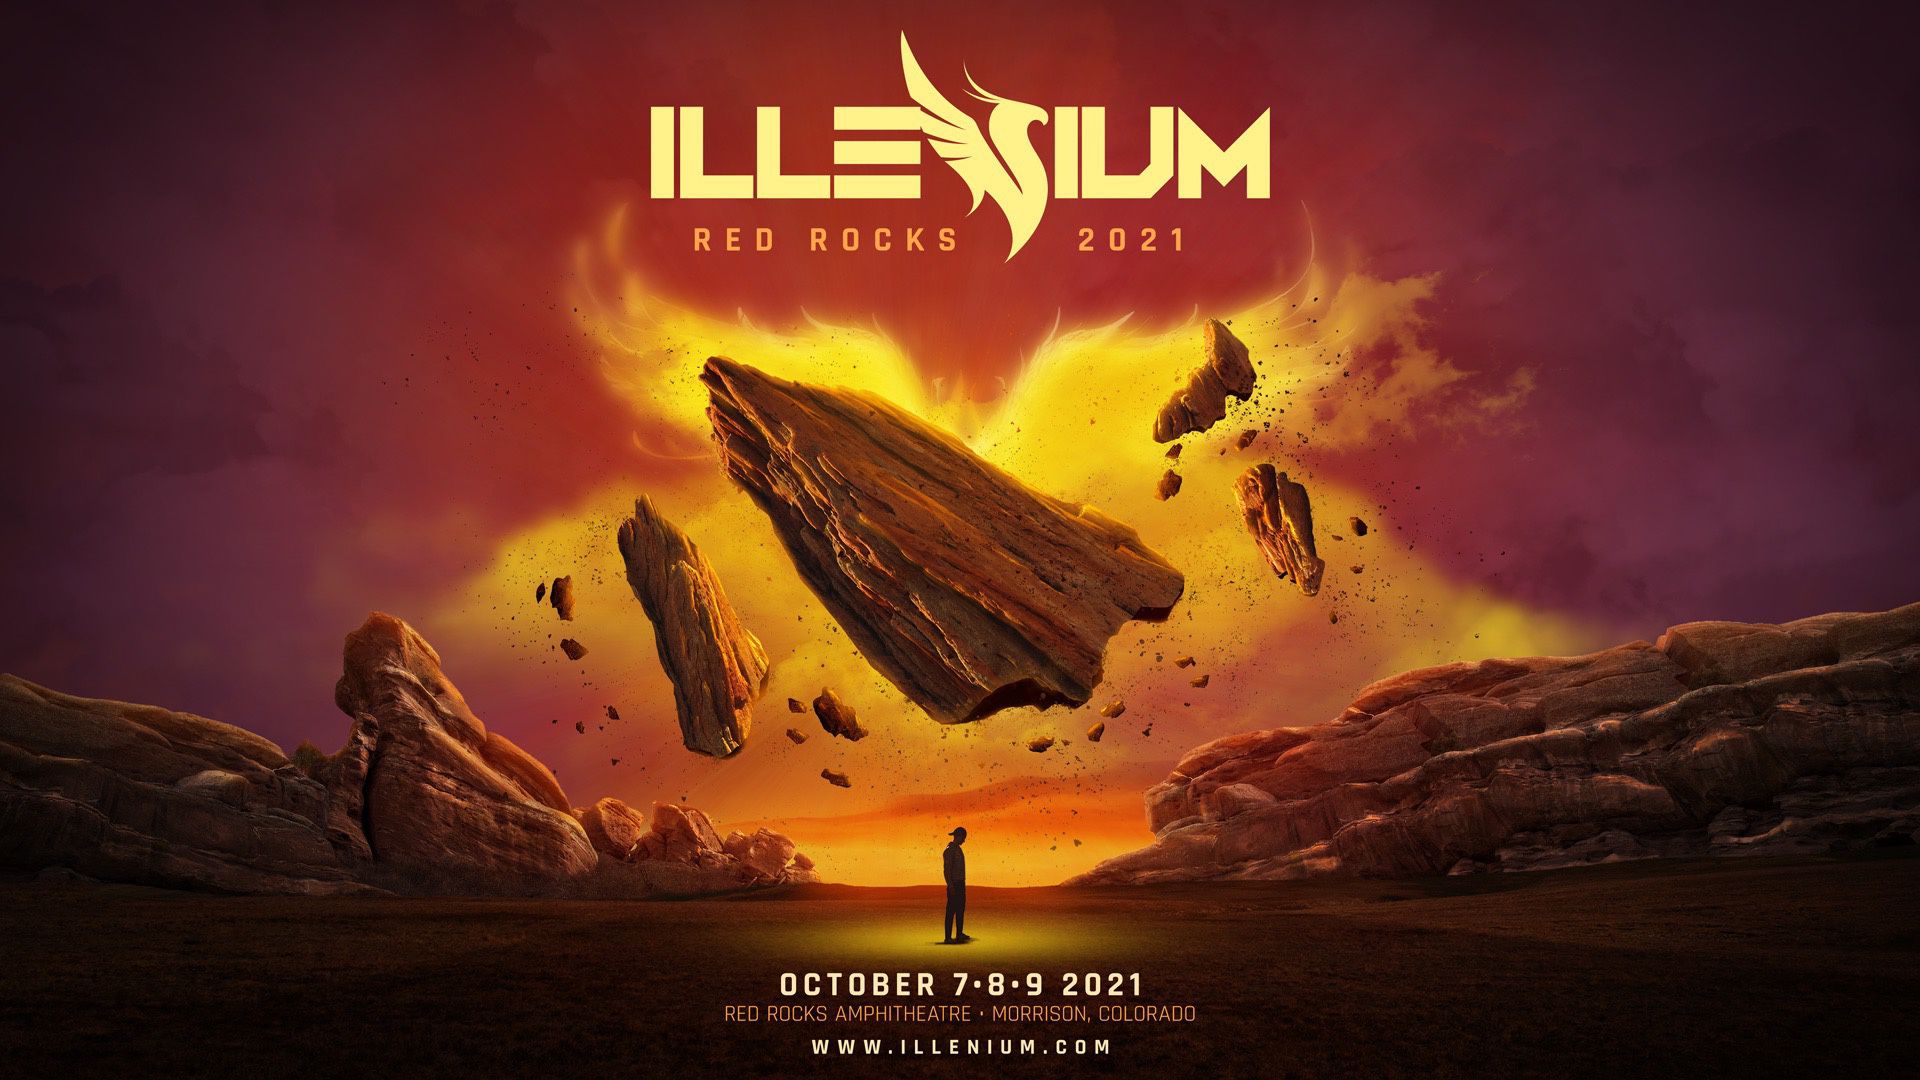 Illenium Red Rocks 2021